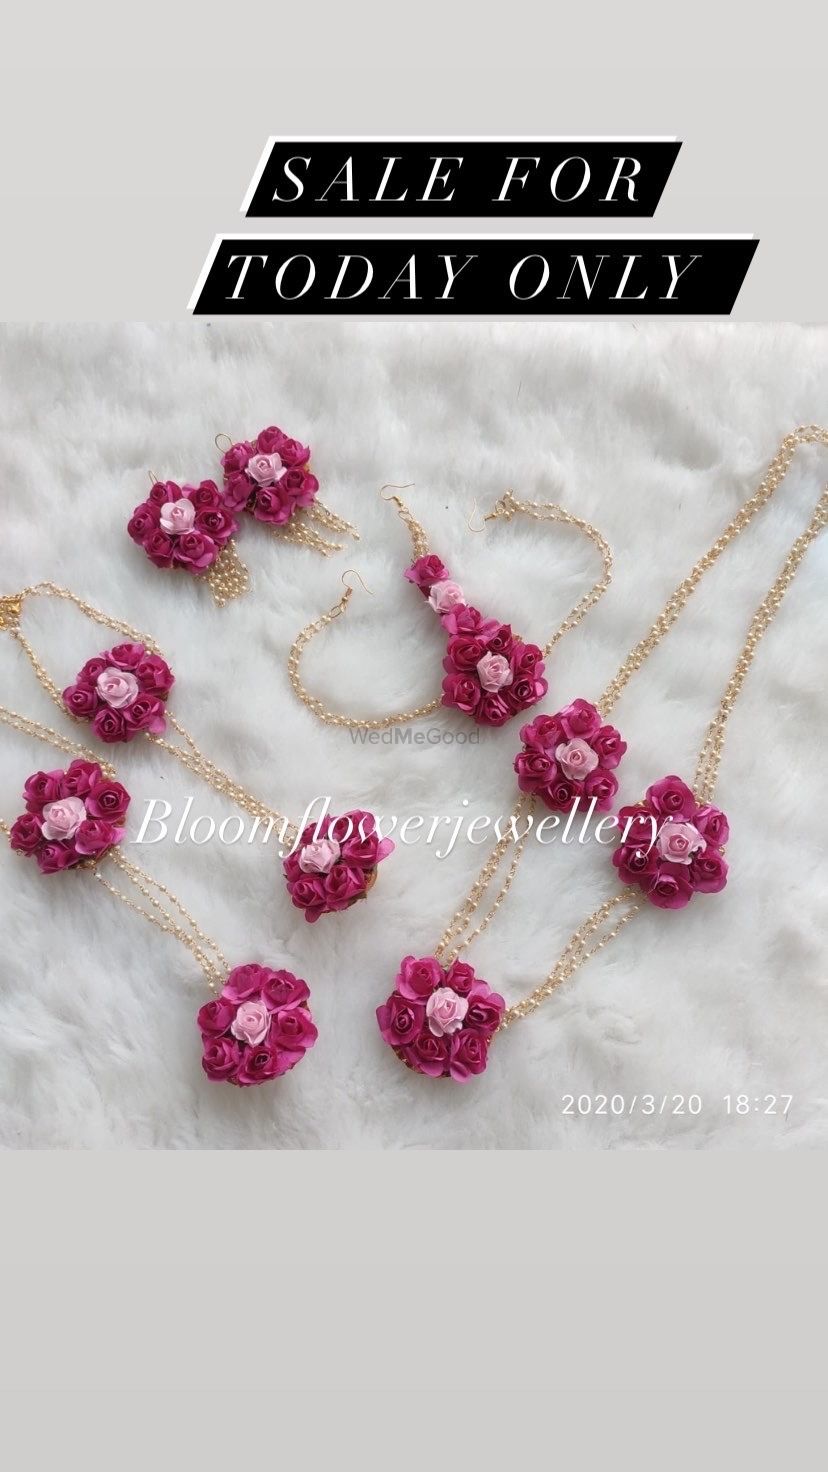 Photo By Bloom Flower Jewellery - Jewellery